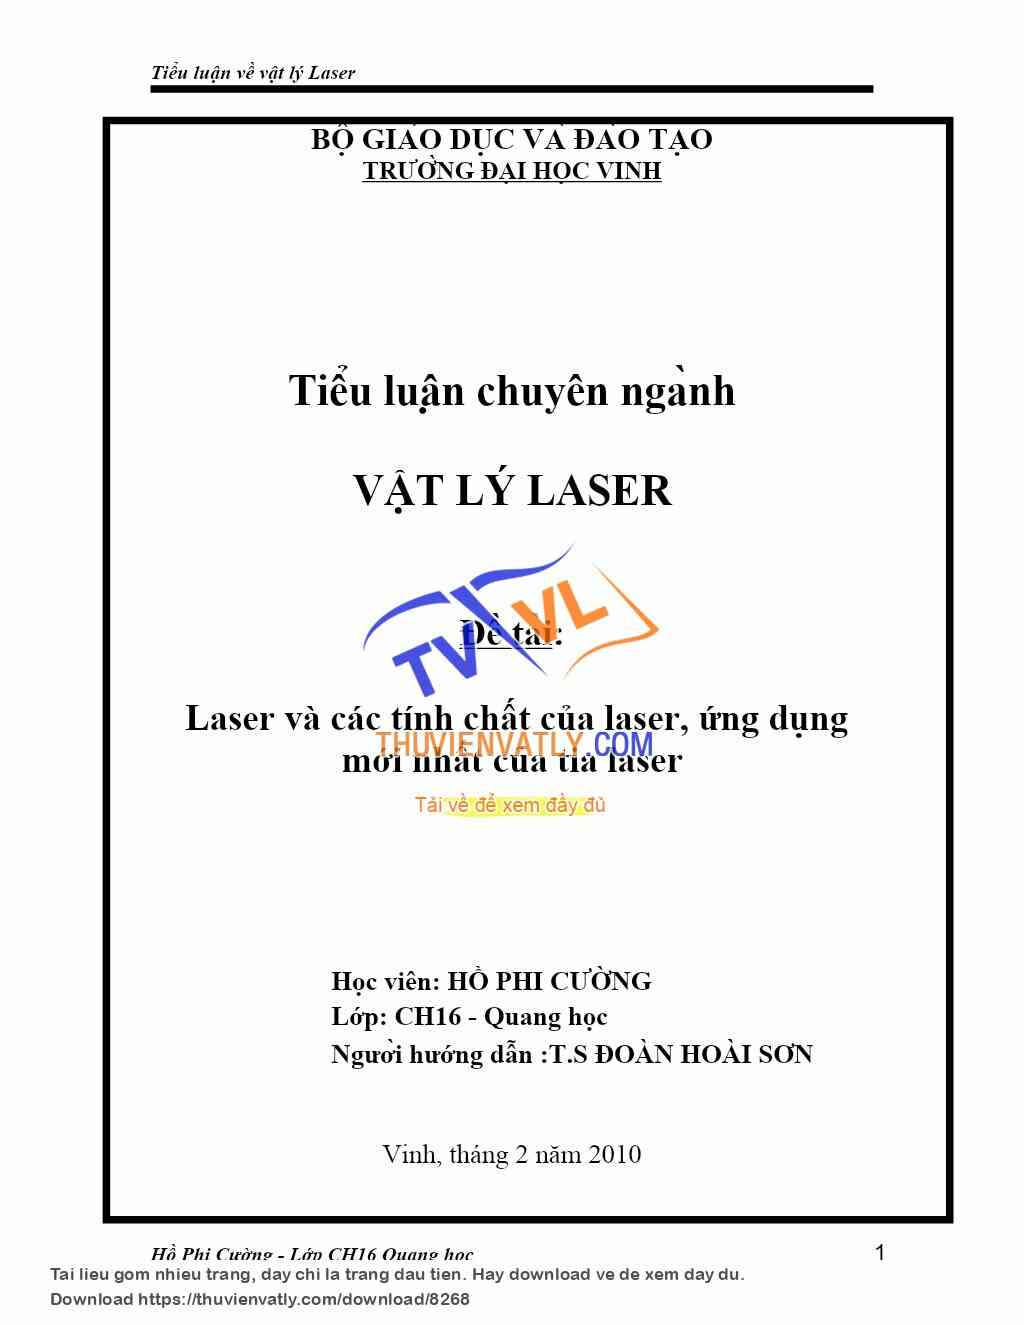 Laser và các tính chất của laser, ứng dụng mới nhất của tia laser